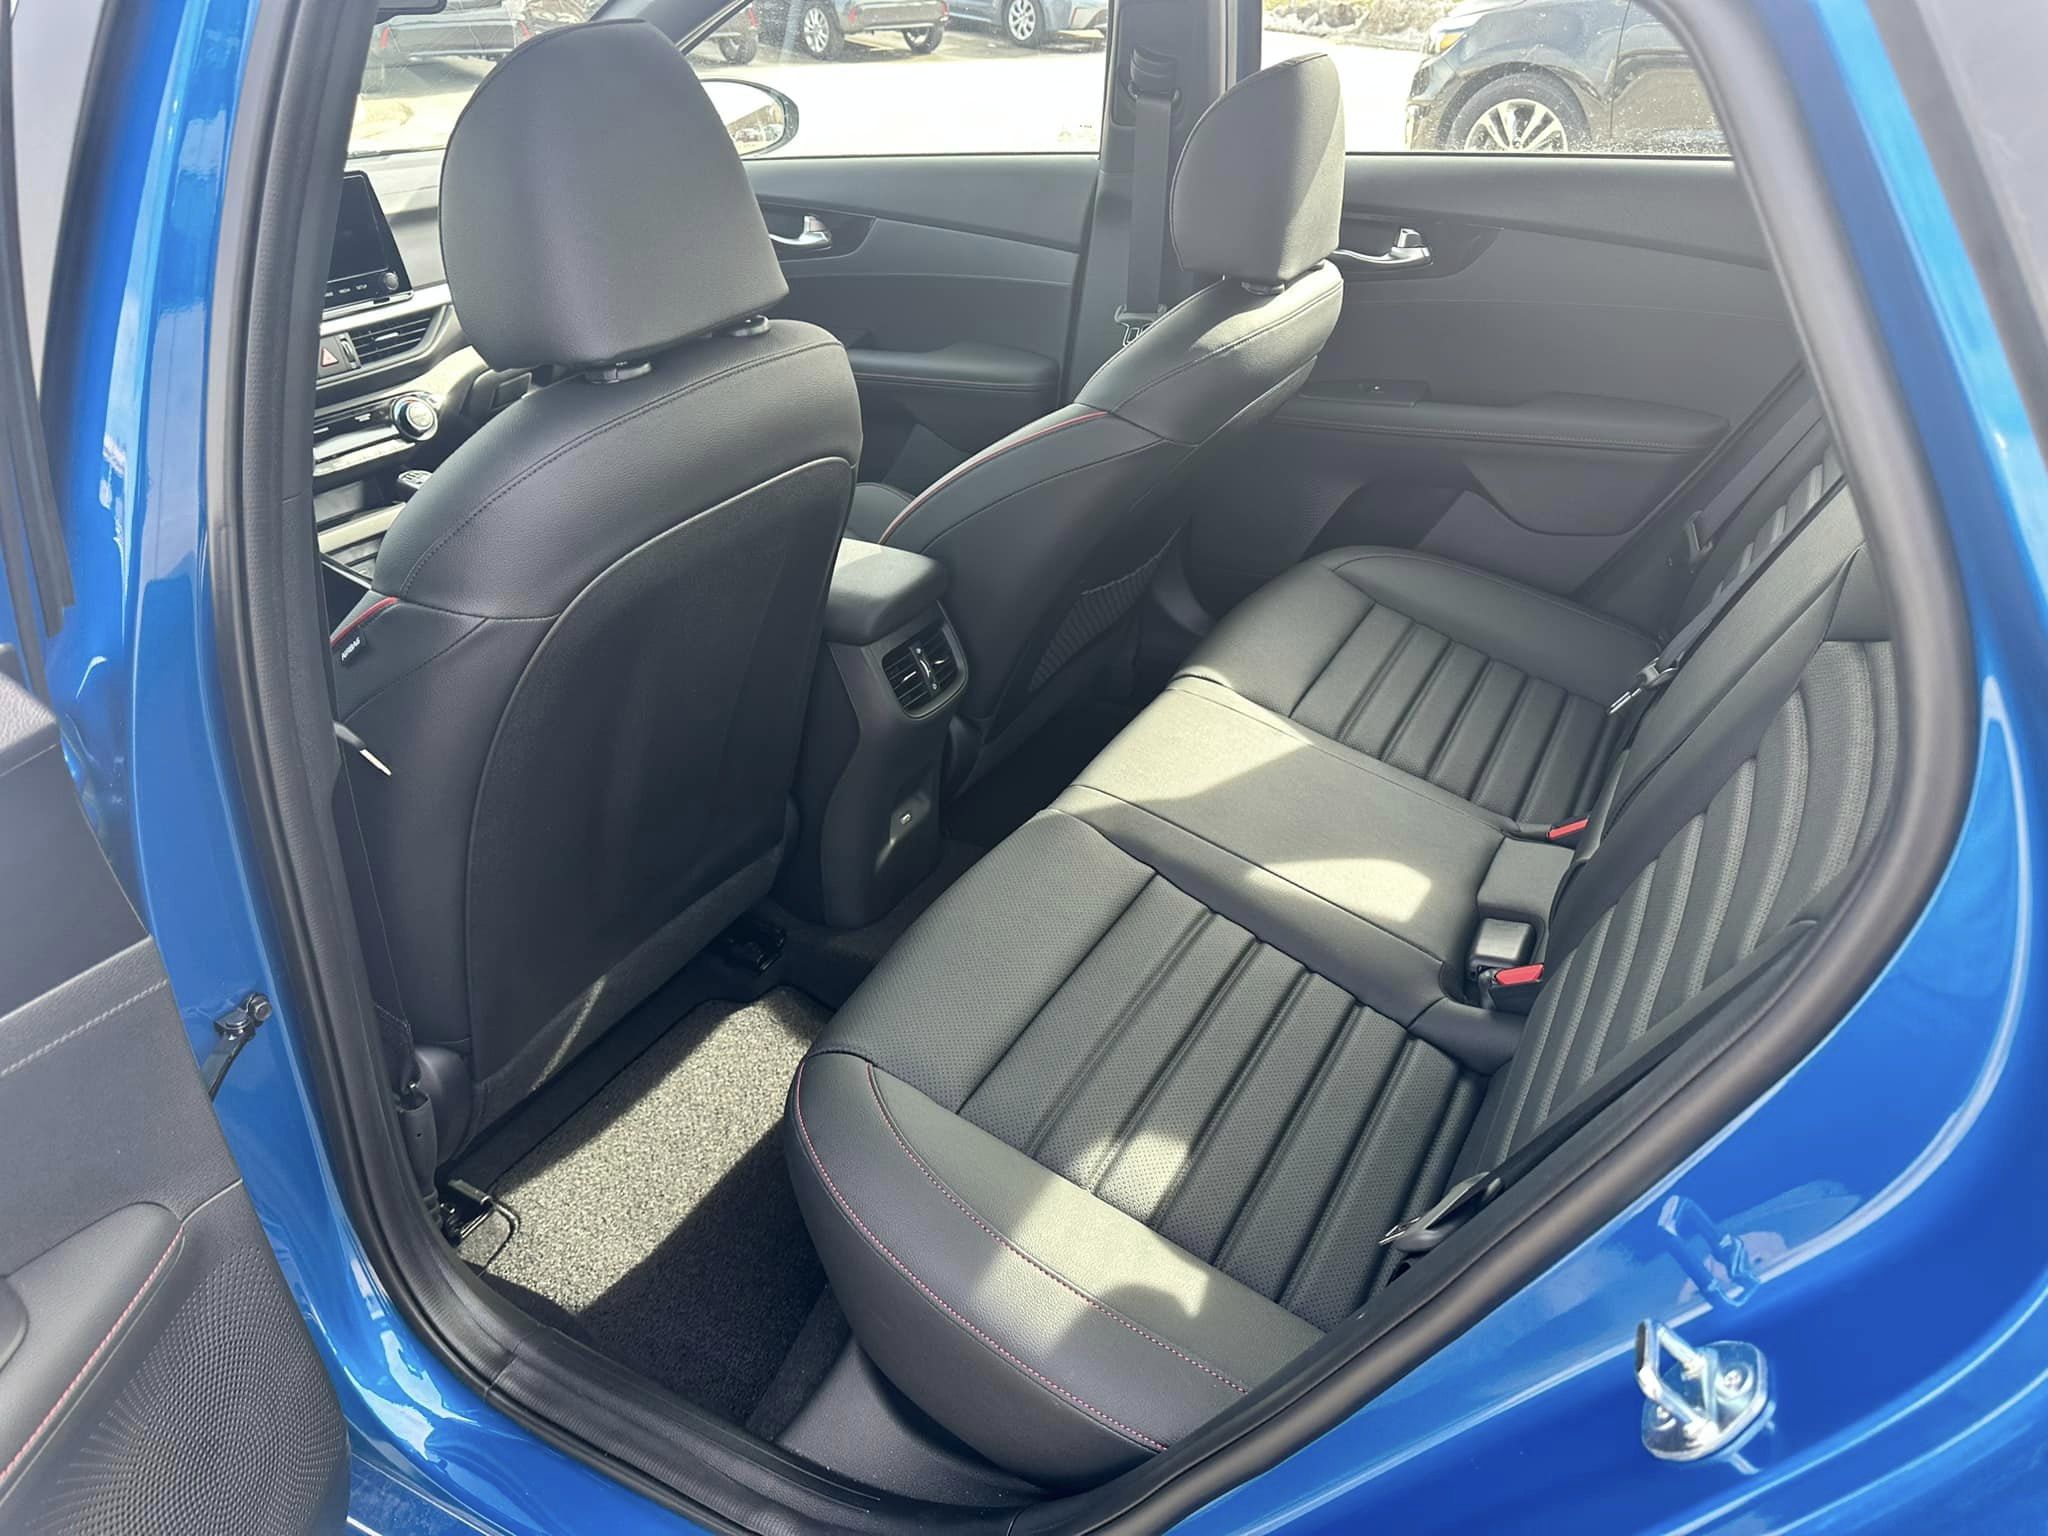 2023 Kia Forte - Sporty Blue - GT Manual Trim - 